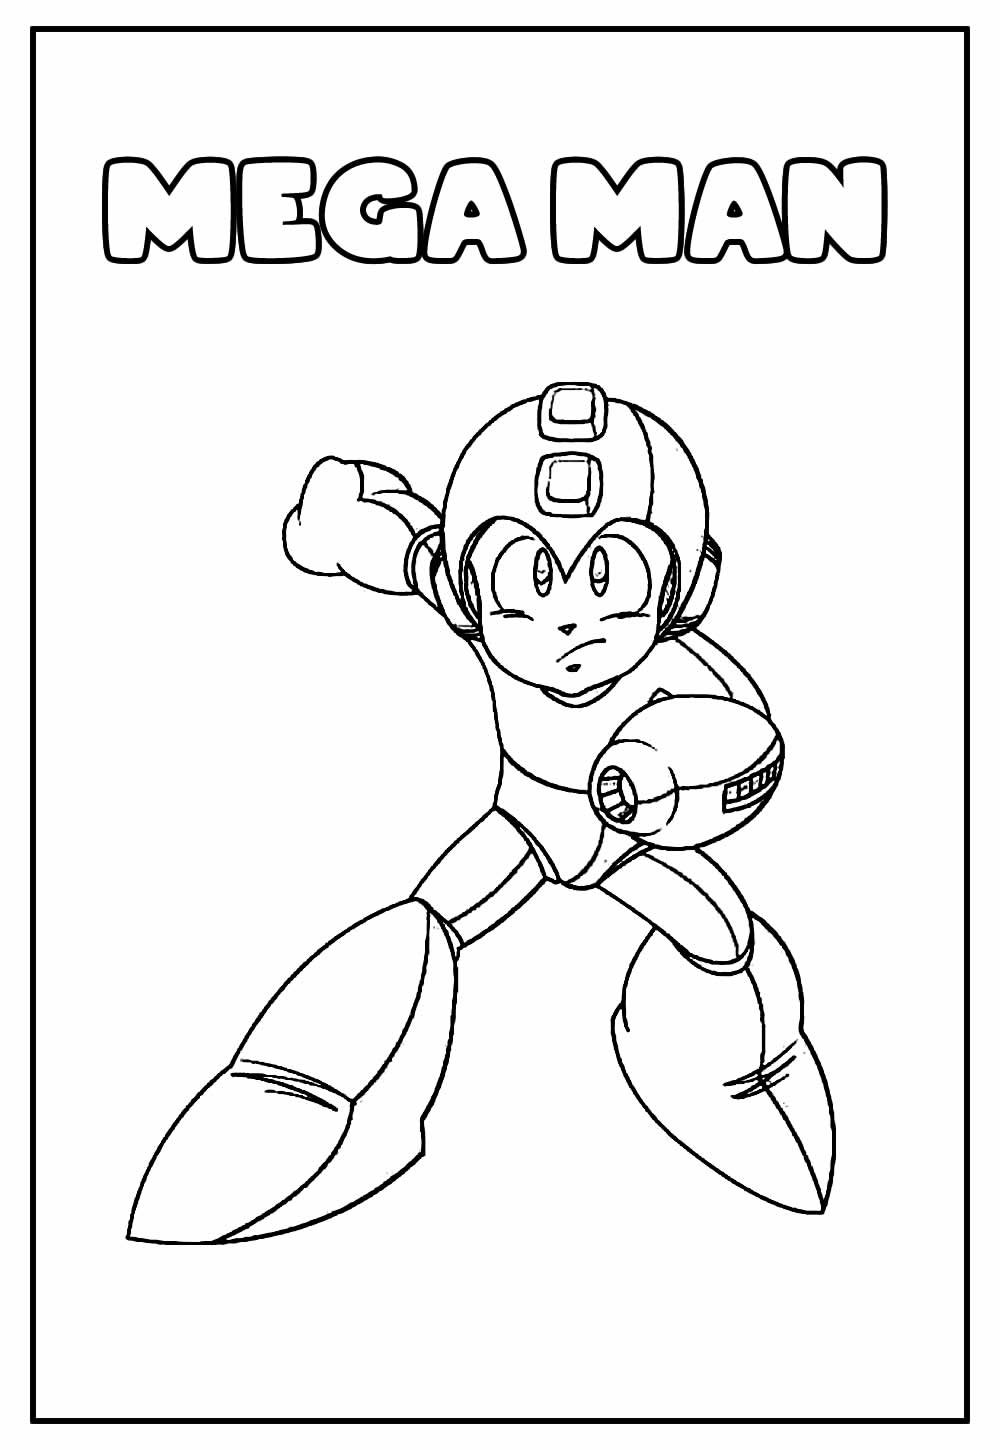 Desenho Educativo do Mega Man para colorir